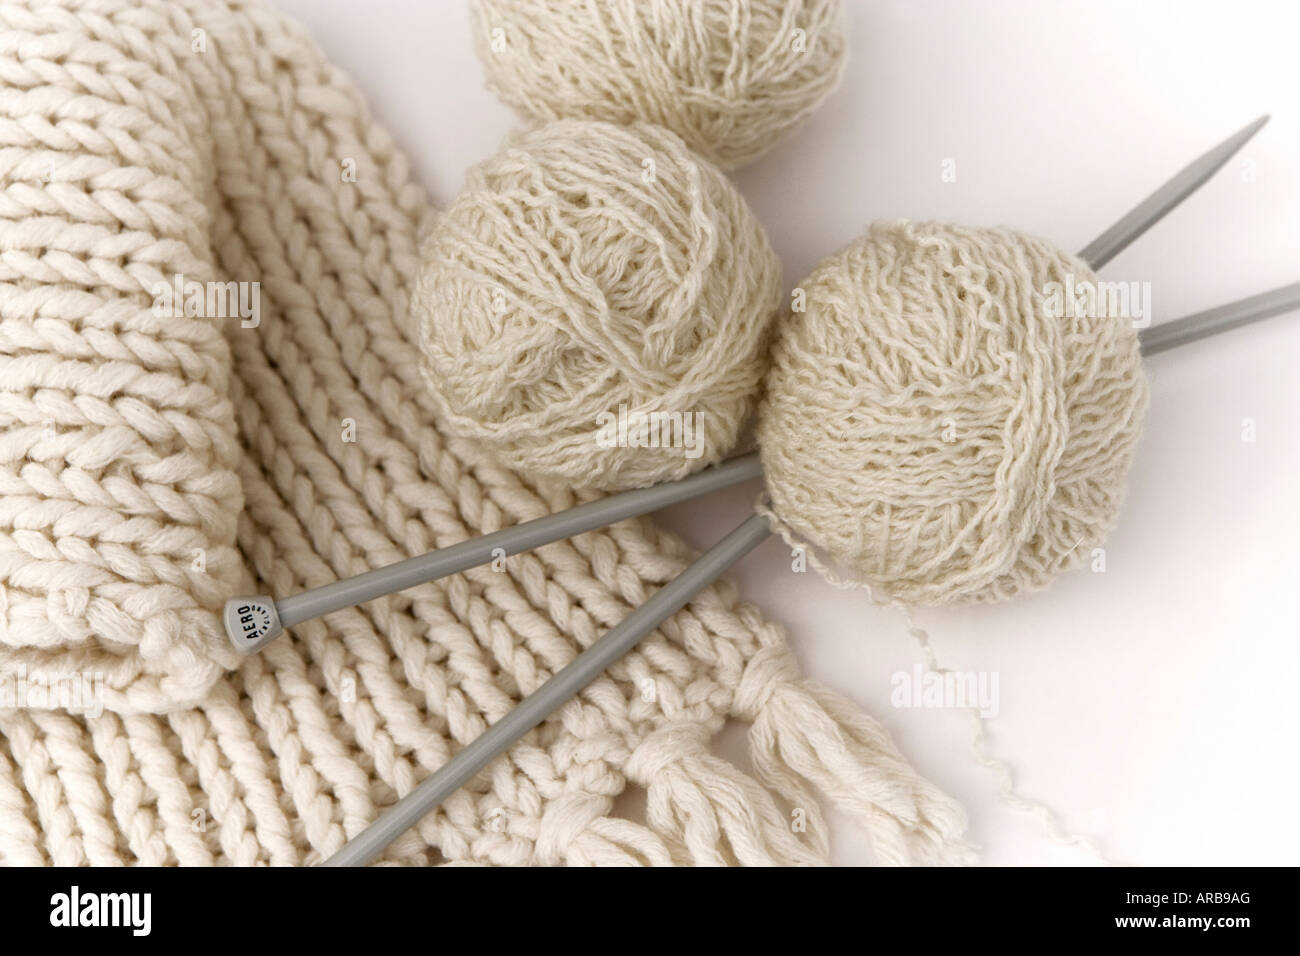 Des aiguilles à tricoter, de la laine et un foulard crème tricot Banque D'Images